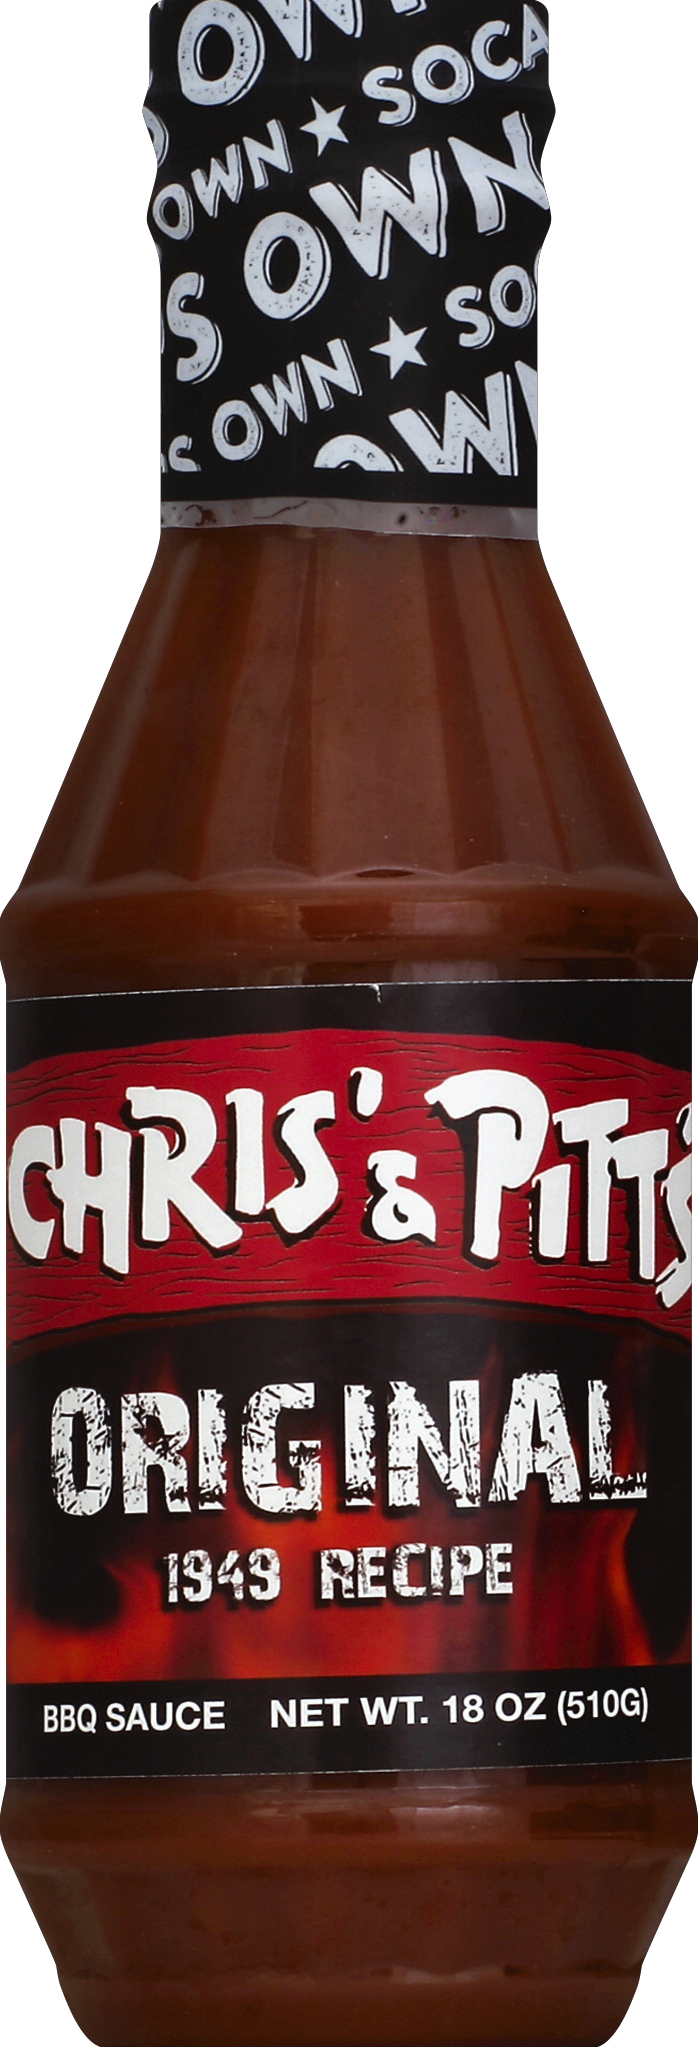 Chris & Pitts Original BBQ Sauce 18oz